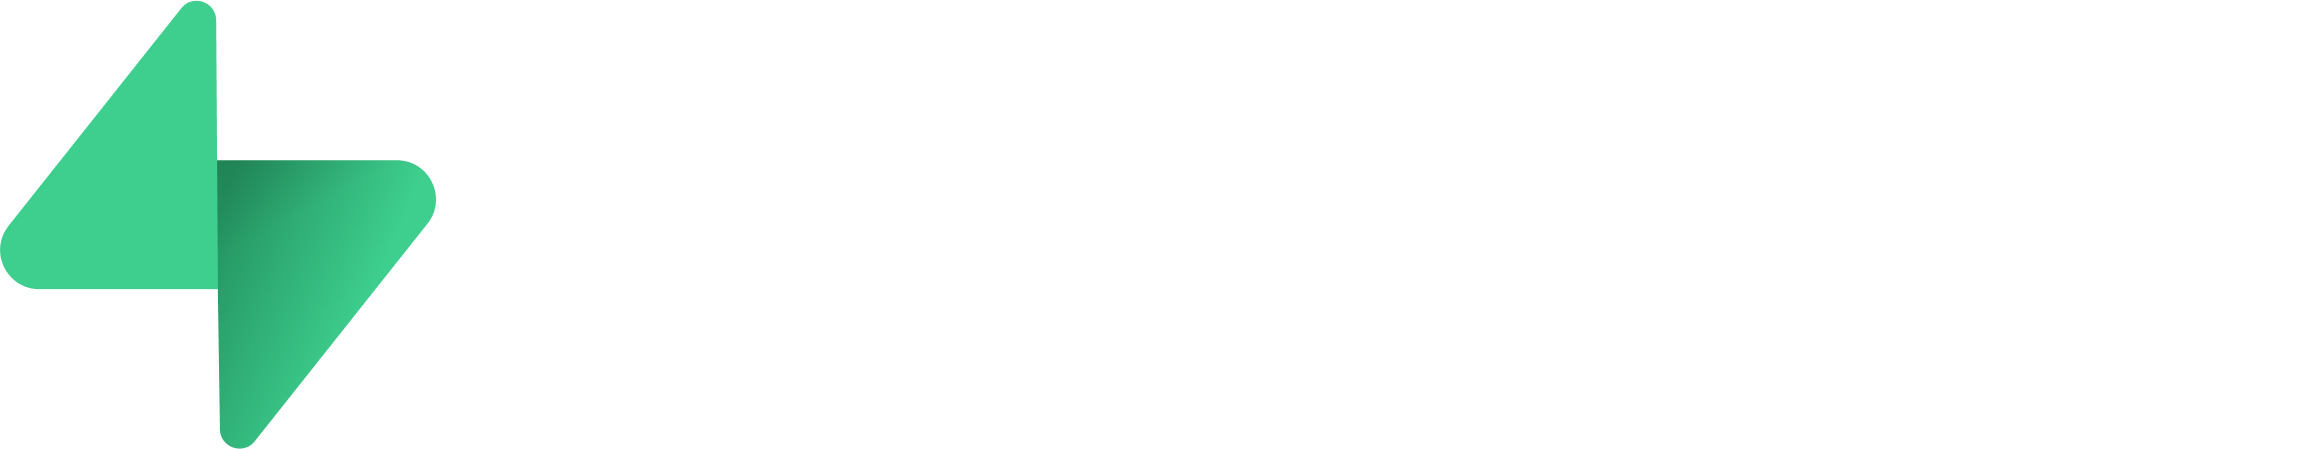 Supabase logo wordmark  dark